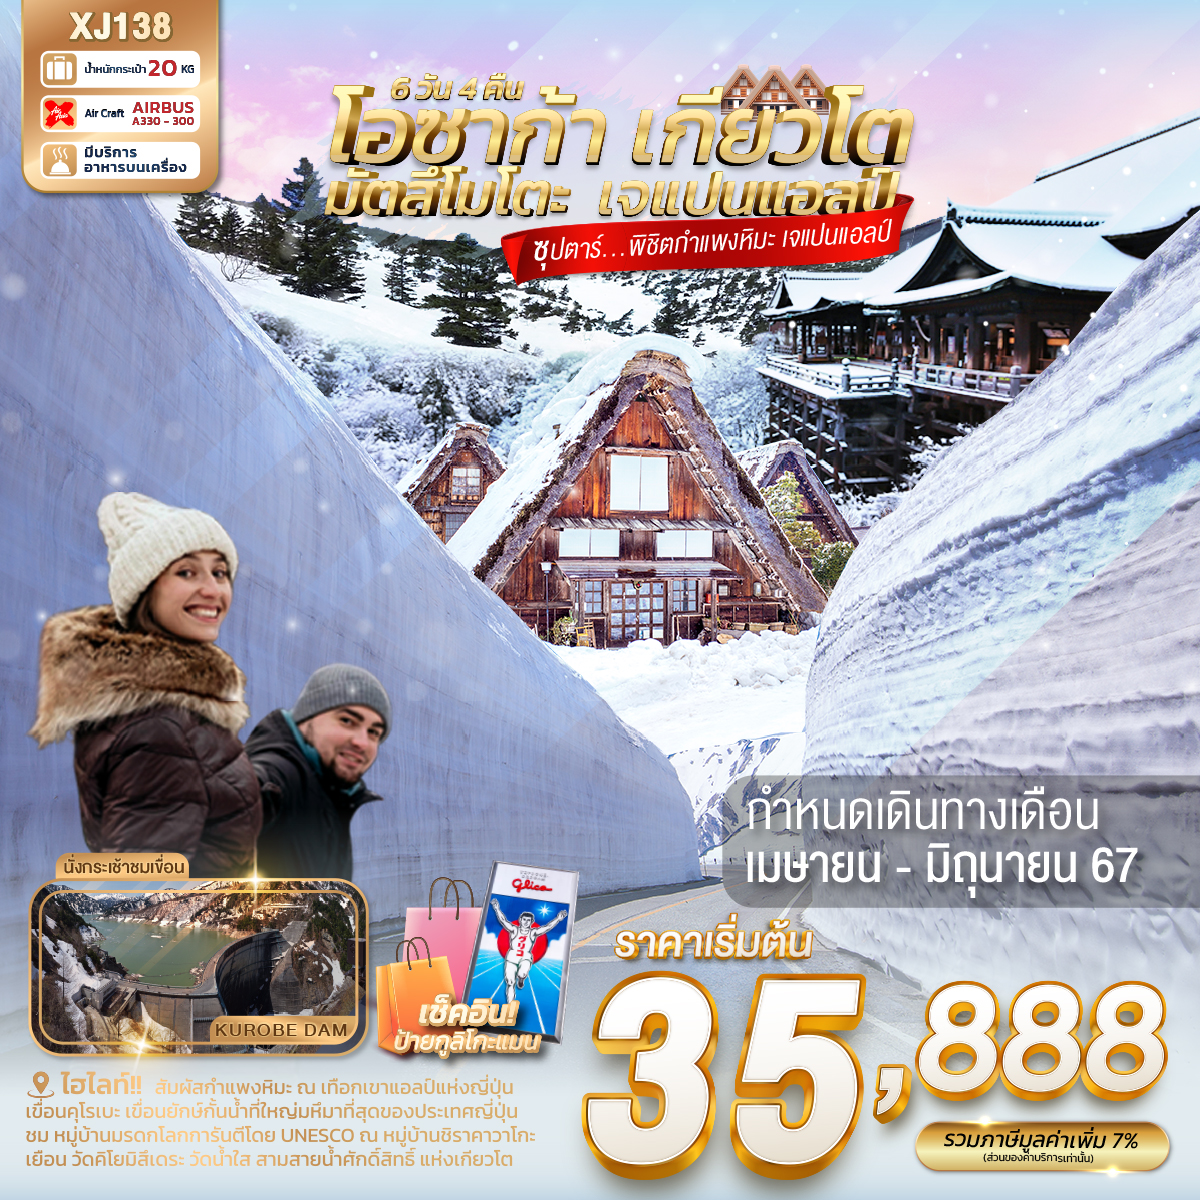 ไฮไลท์!! สัมผัสกำแพงหิมะขนาดมหึมา ณ เทือกเขาแอลป์แห่งญี่ปุ่น
เขื่อนคุโรเบะ เขื่อนยักษ์กั้นน้ำที่ใหญ่มหึมาที่สุดของประเทศญี่ปุ่น
ชม หมู่บ้านมรดกโลกการันตีโดย UNESCO ณ หมู่บ้านชิราคาวาโกะ
สักการะสิ่งศักดิ์สิทธิ์ ณ ศาลเจ้าเฮอัน ประตูโทริอิยักษ์สีแดงที่ตั้งอยู่ด้านหน้าของวัด
 เดินชิว เมืองเก่าทาคายาม่า ฉายา Little Kyoto ณ ถนนซันมาจิซูจิ
เยือน วัดคิโยมิสึเดระ วัดน้ำใส สามสายน้ำศักดิ์สิทธิ์ แห่งเกียวโต
ช้อปปิ้งจุใจ ณ EXPO City และ ย่านชินไซบาชิ
พร้อมเช็คอิน ป้ายกูลิโกะแมน แห่ง โดทงโบริ